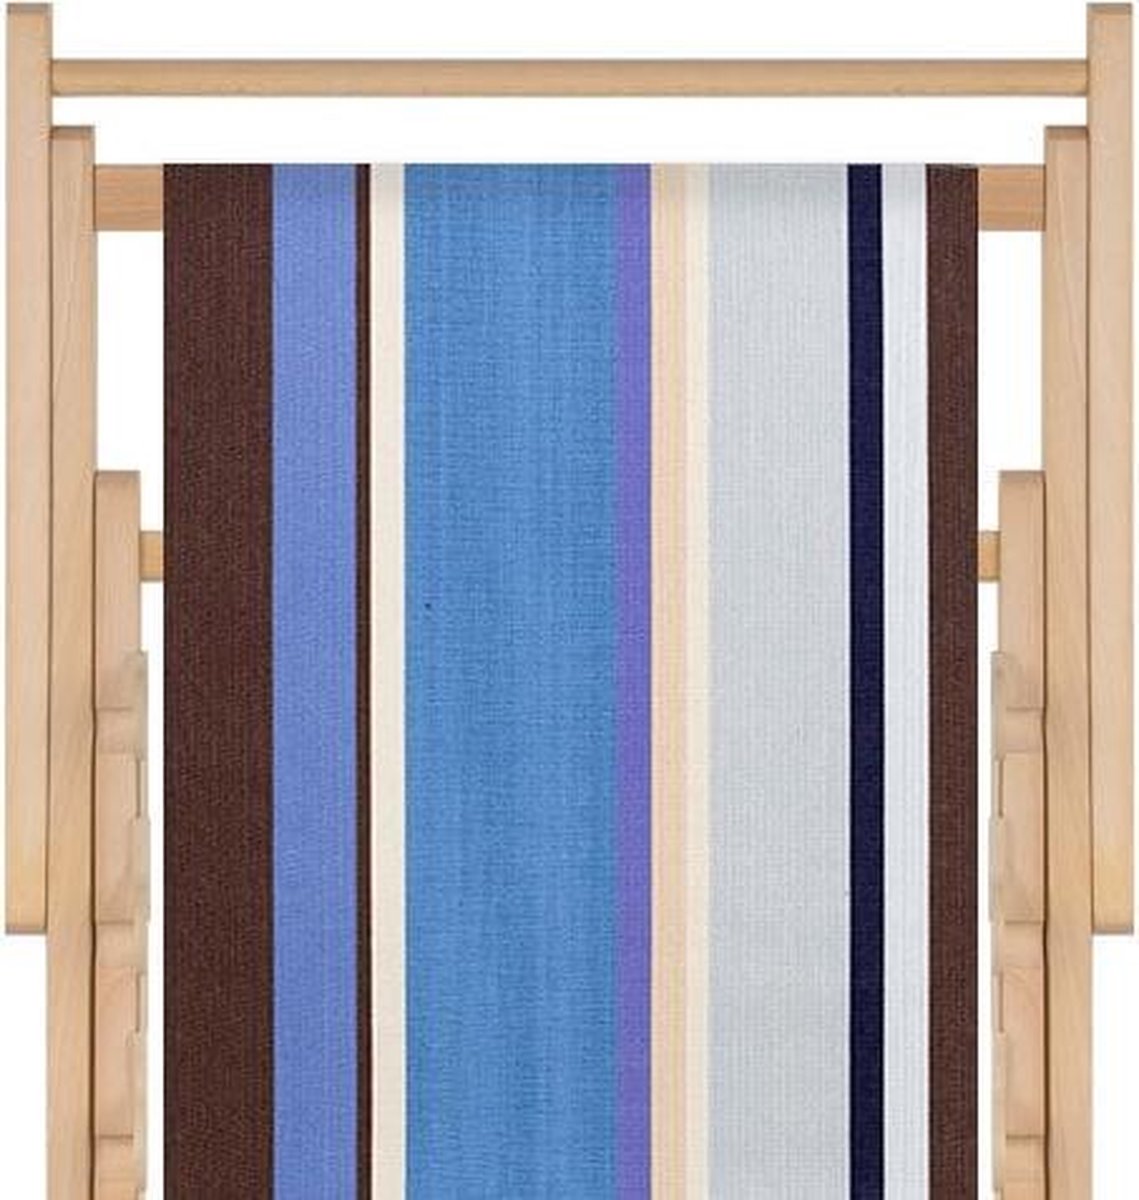 Houten strandstoel met hoogwaardige stof in katoen - massief beukehout - dubbelgeweven katoen Saint Cyprien - opvouwbaar - verstelbaar in 3 standen - zonder armleuning - afneembare hoes - meerkleurig blauw taupe